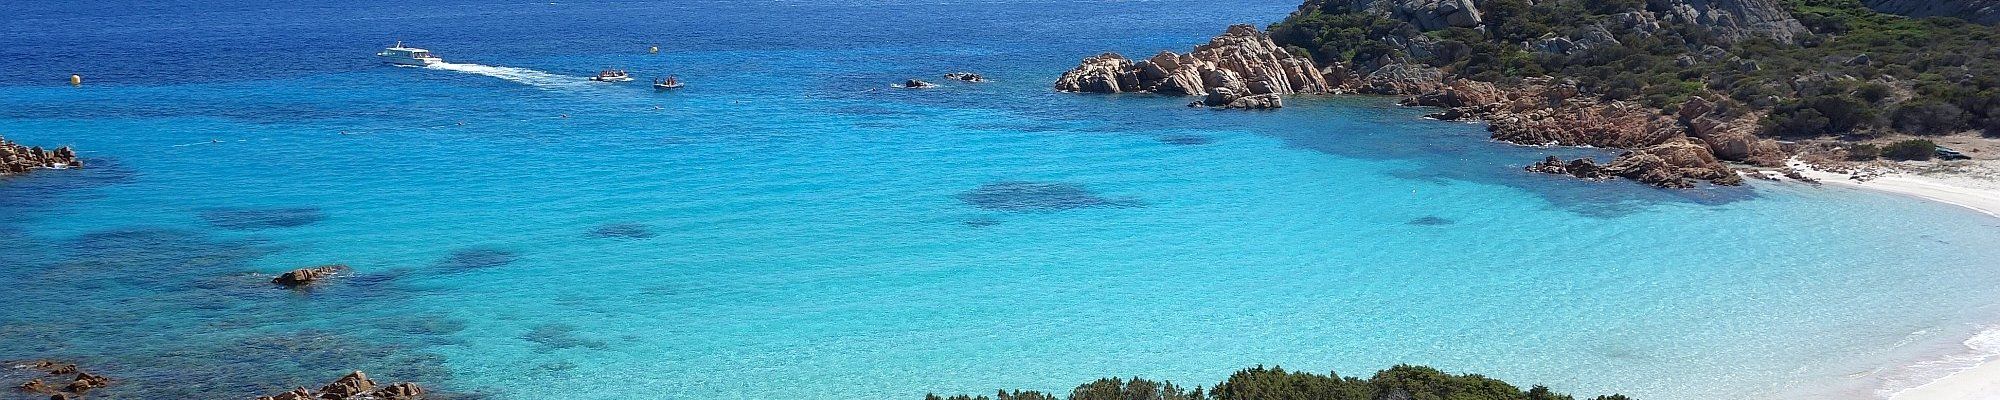 Türkisblaues Meer um Sardinien © mediaobjectif auf Pixabay